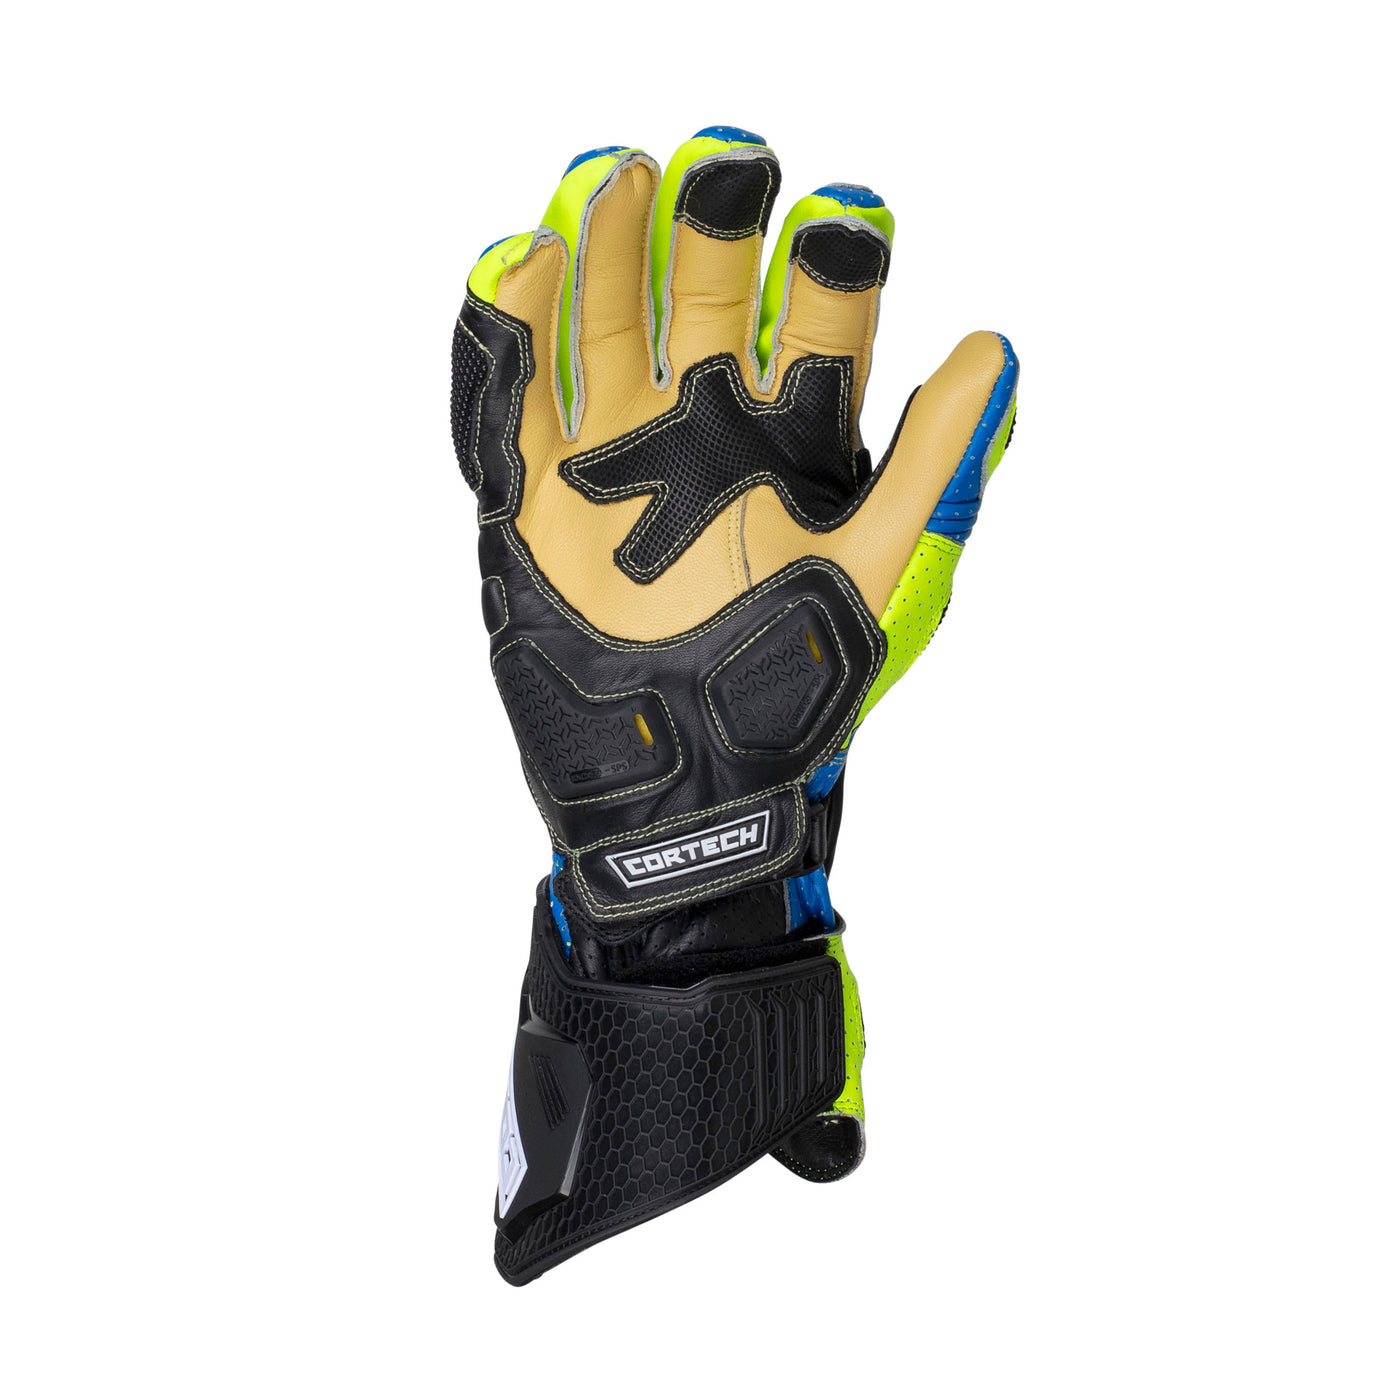 Cortech Speedway Adrenaline GP Glove